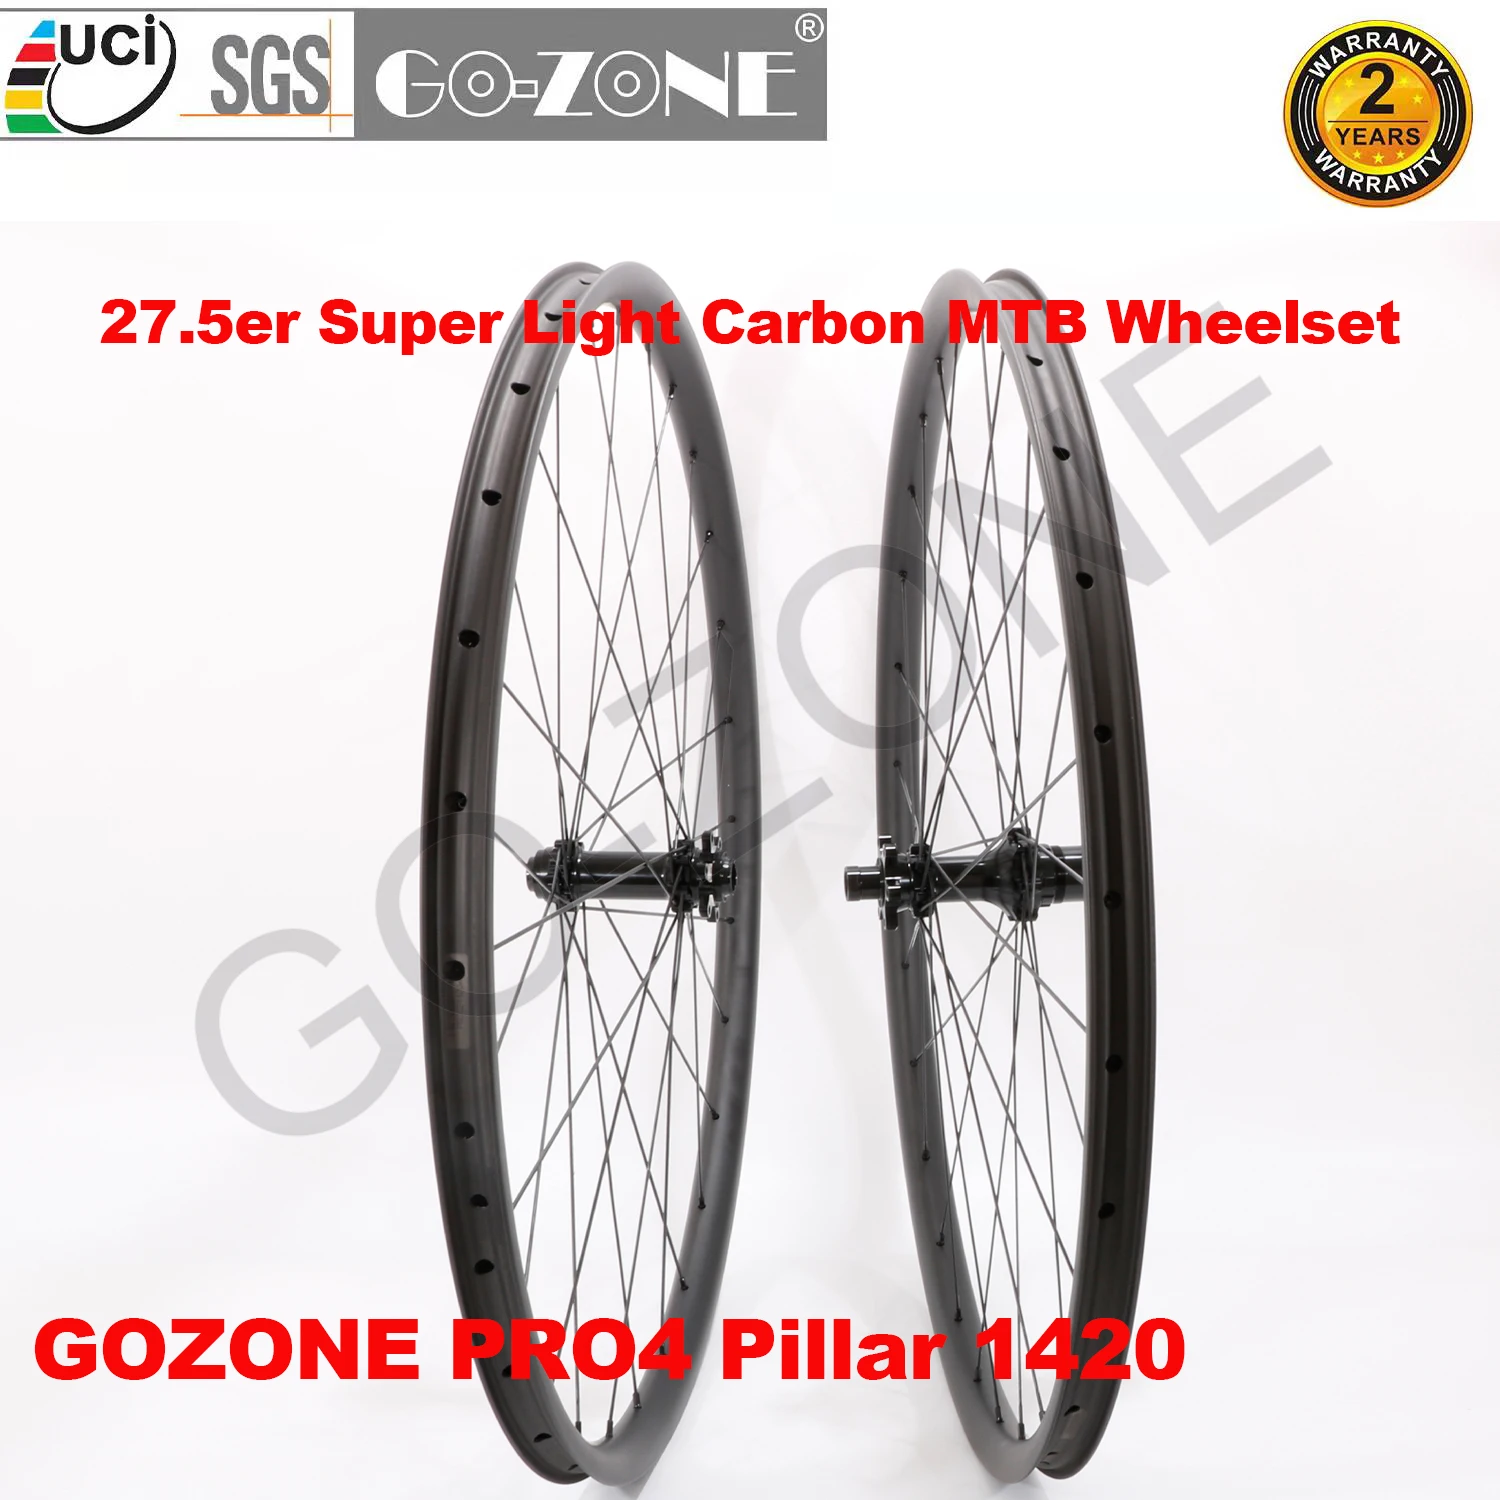 Новые 27,5 er MTB Колеса Carbon Super Light Бескамерные Speedsafe GOZONE PRO4, Одобренная UCI Велосипедная Колесная Пара 27,5